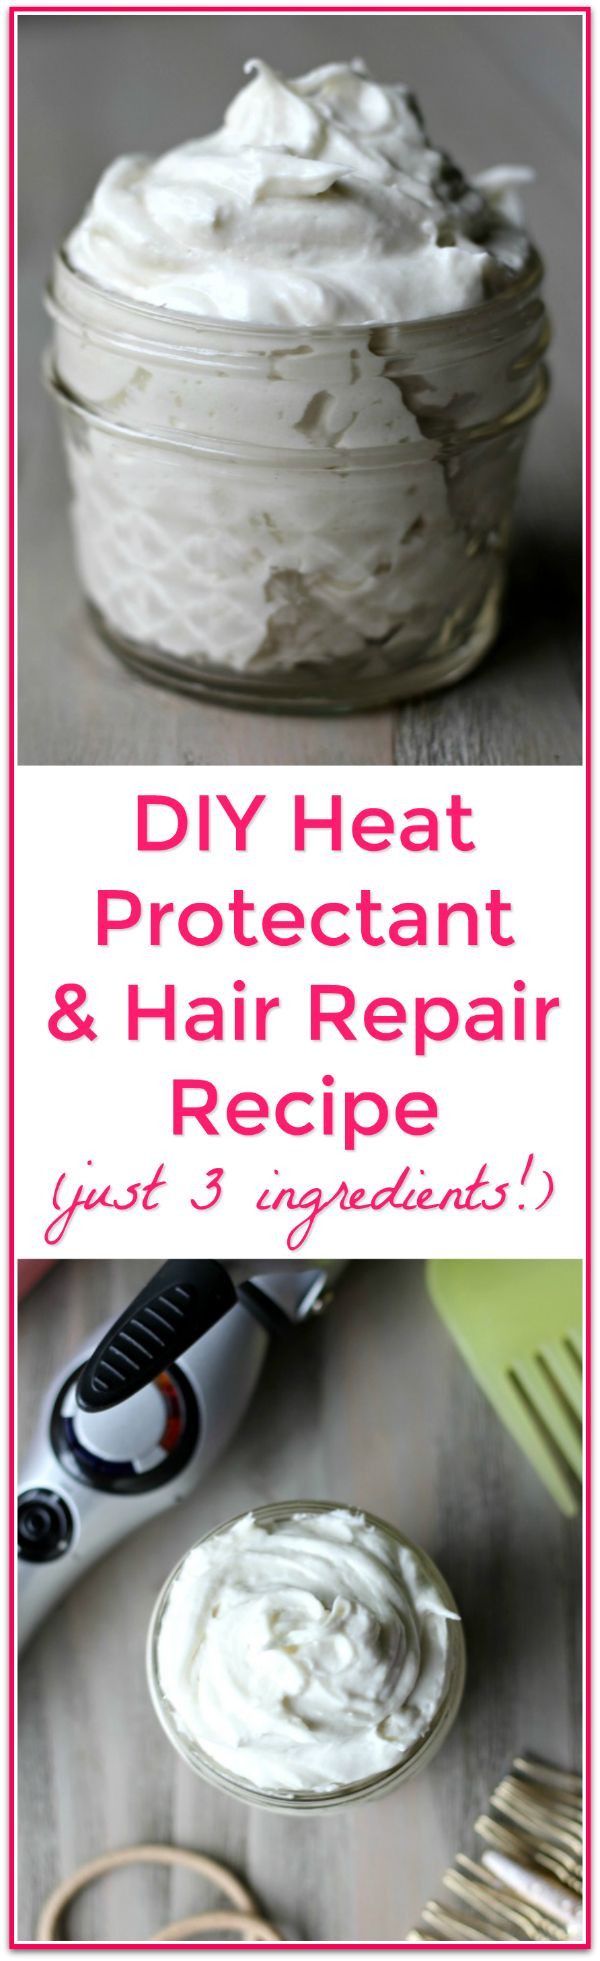 DIY Heat Protectant For Natural Hair
 DIY Heat Protectant and Hair Repair Recipe